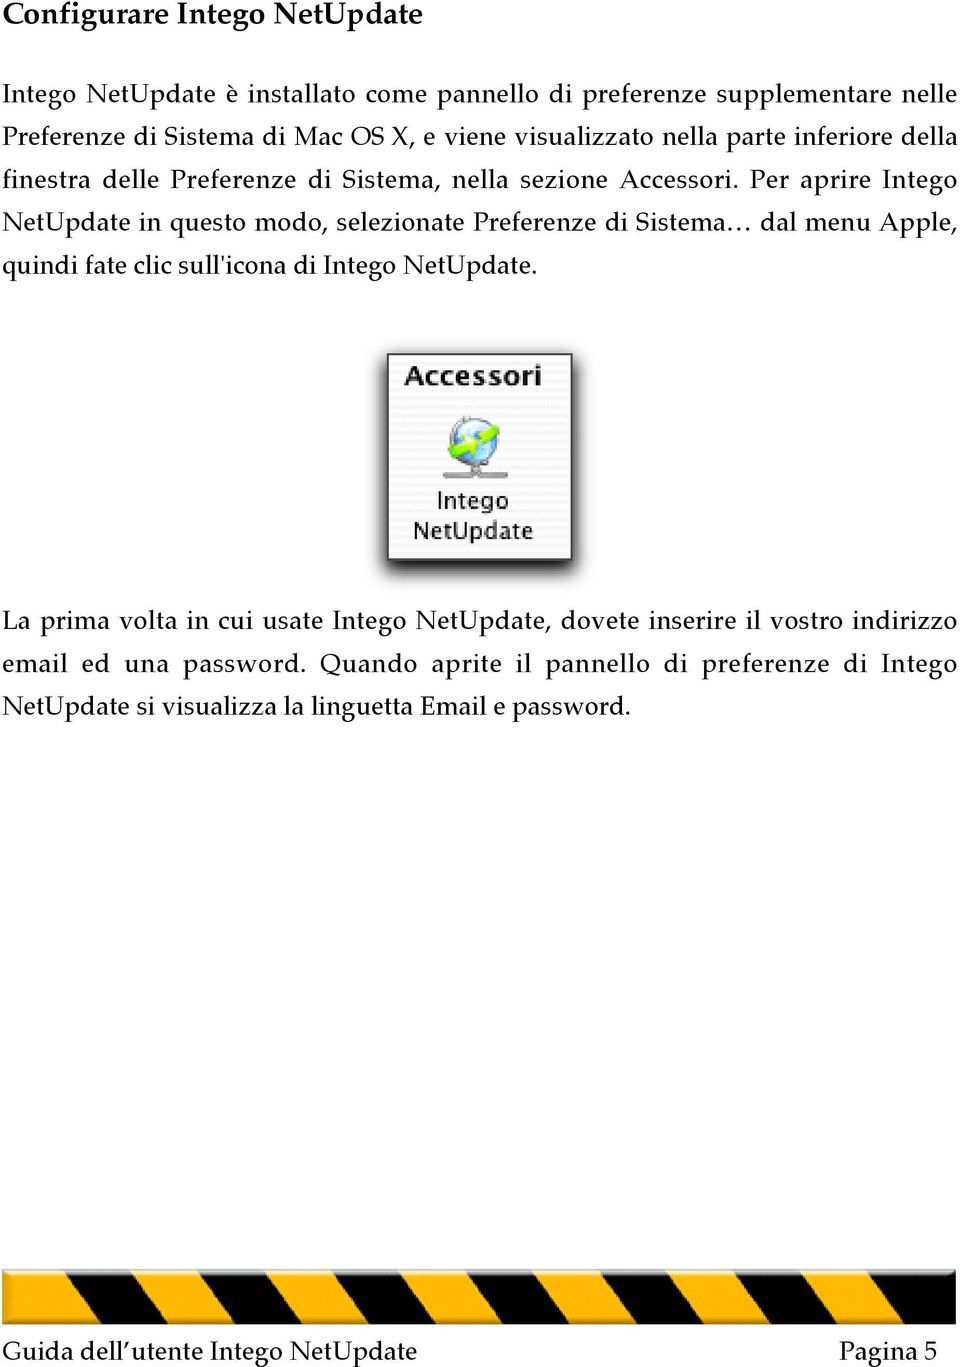 Per aprire Intego NetUpdate in questo modo, selezionate Preferenze di Sistema dal menu Apple, quindi fate clic sull'icona di Intego NetUpdate.